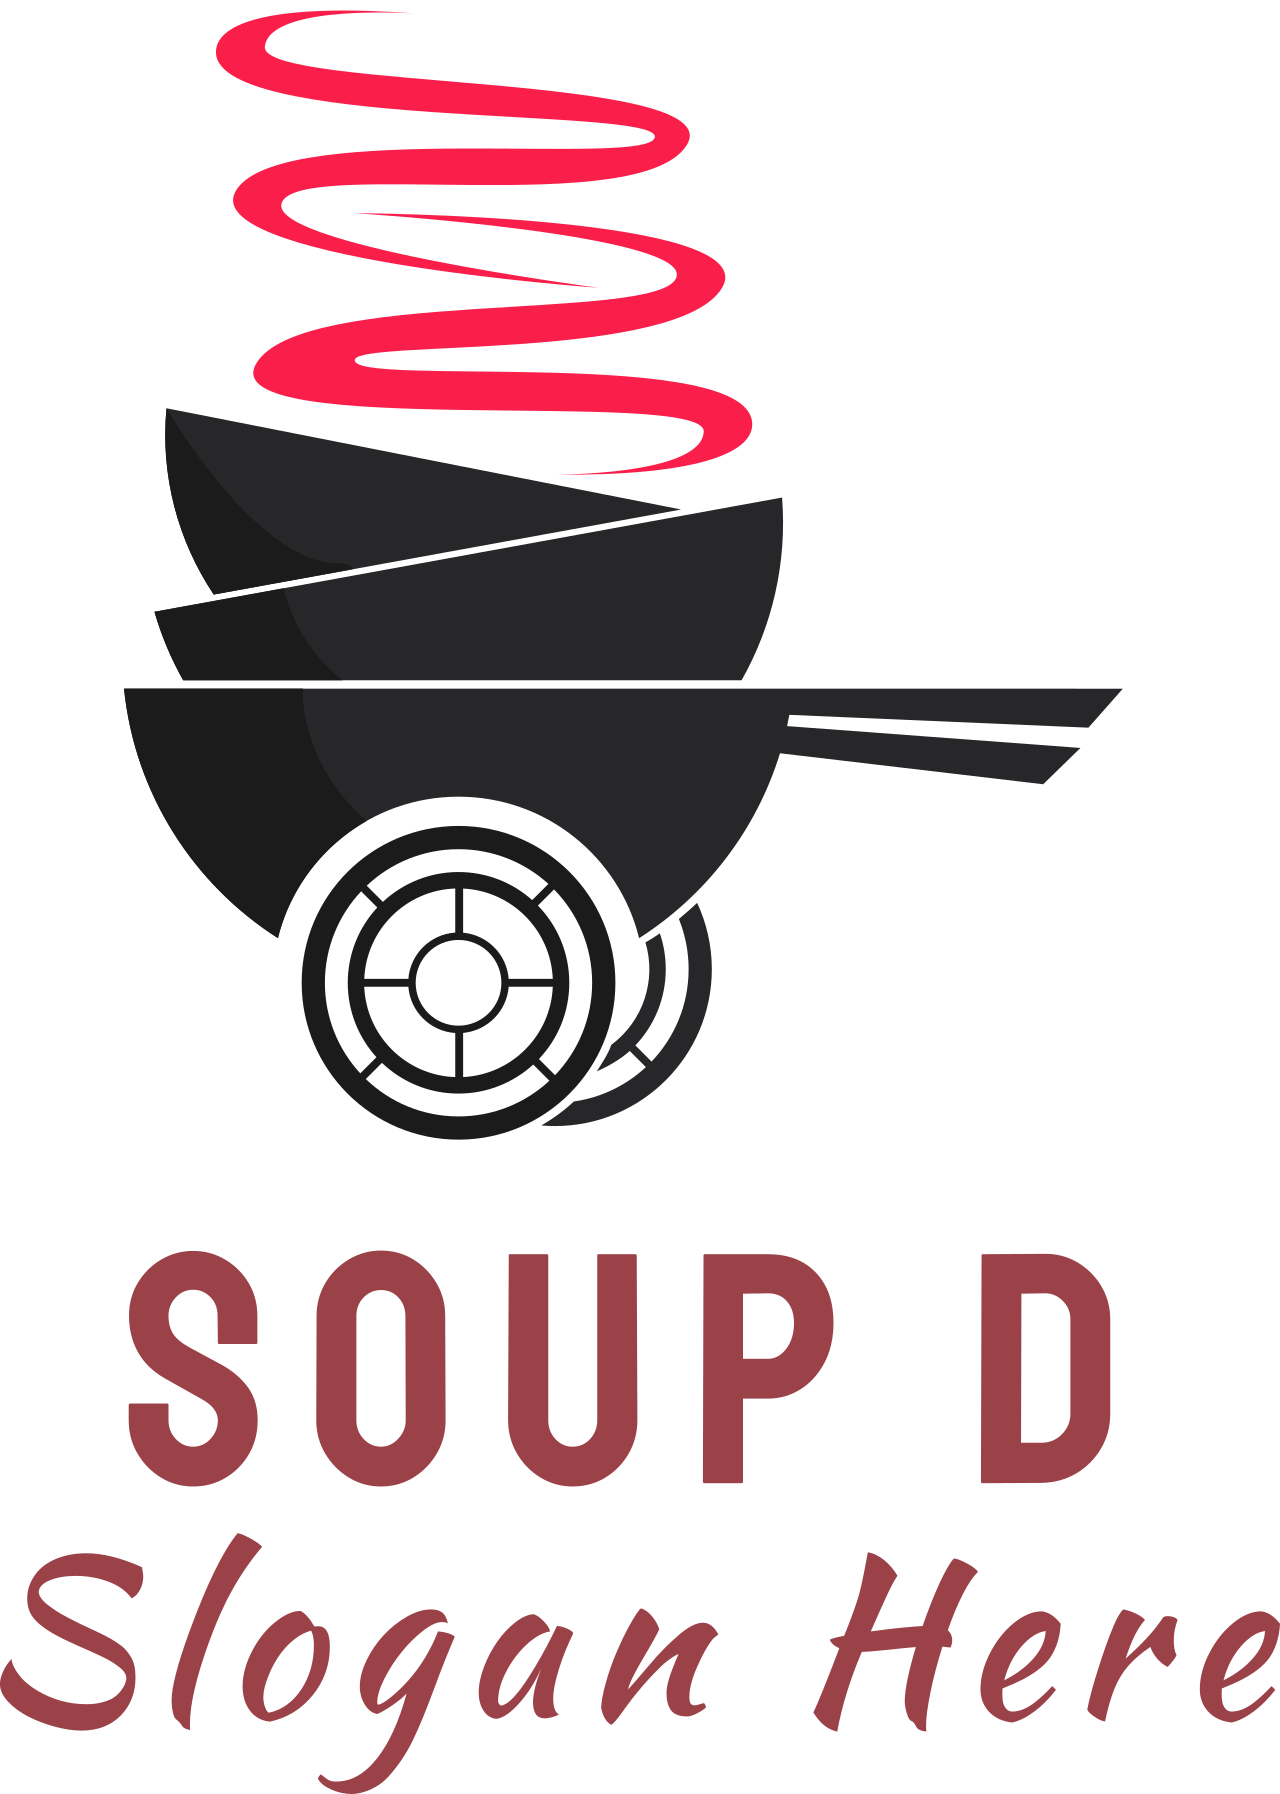 SOUP D's web page